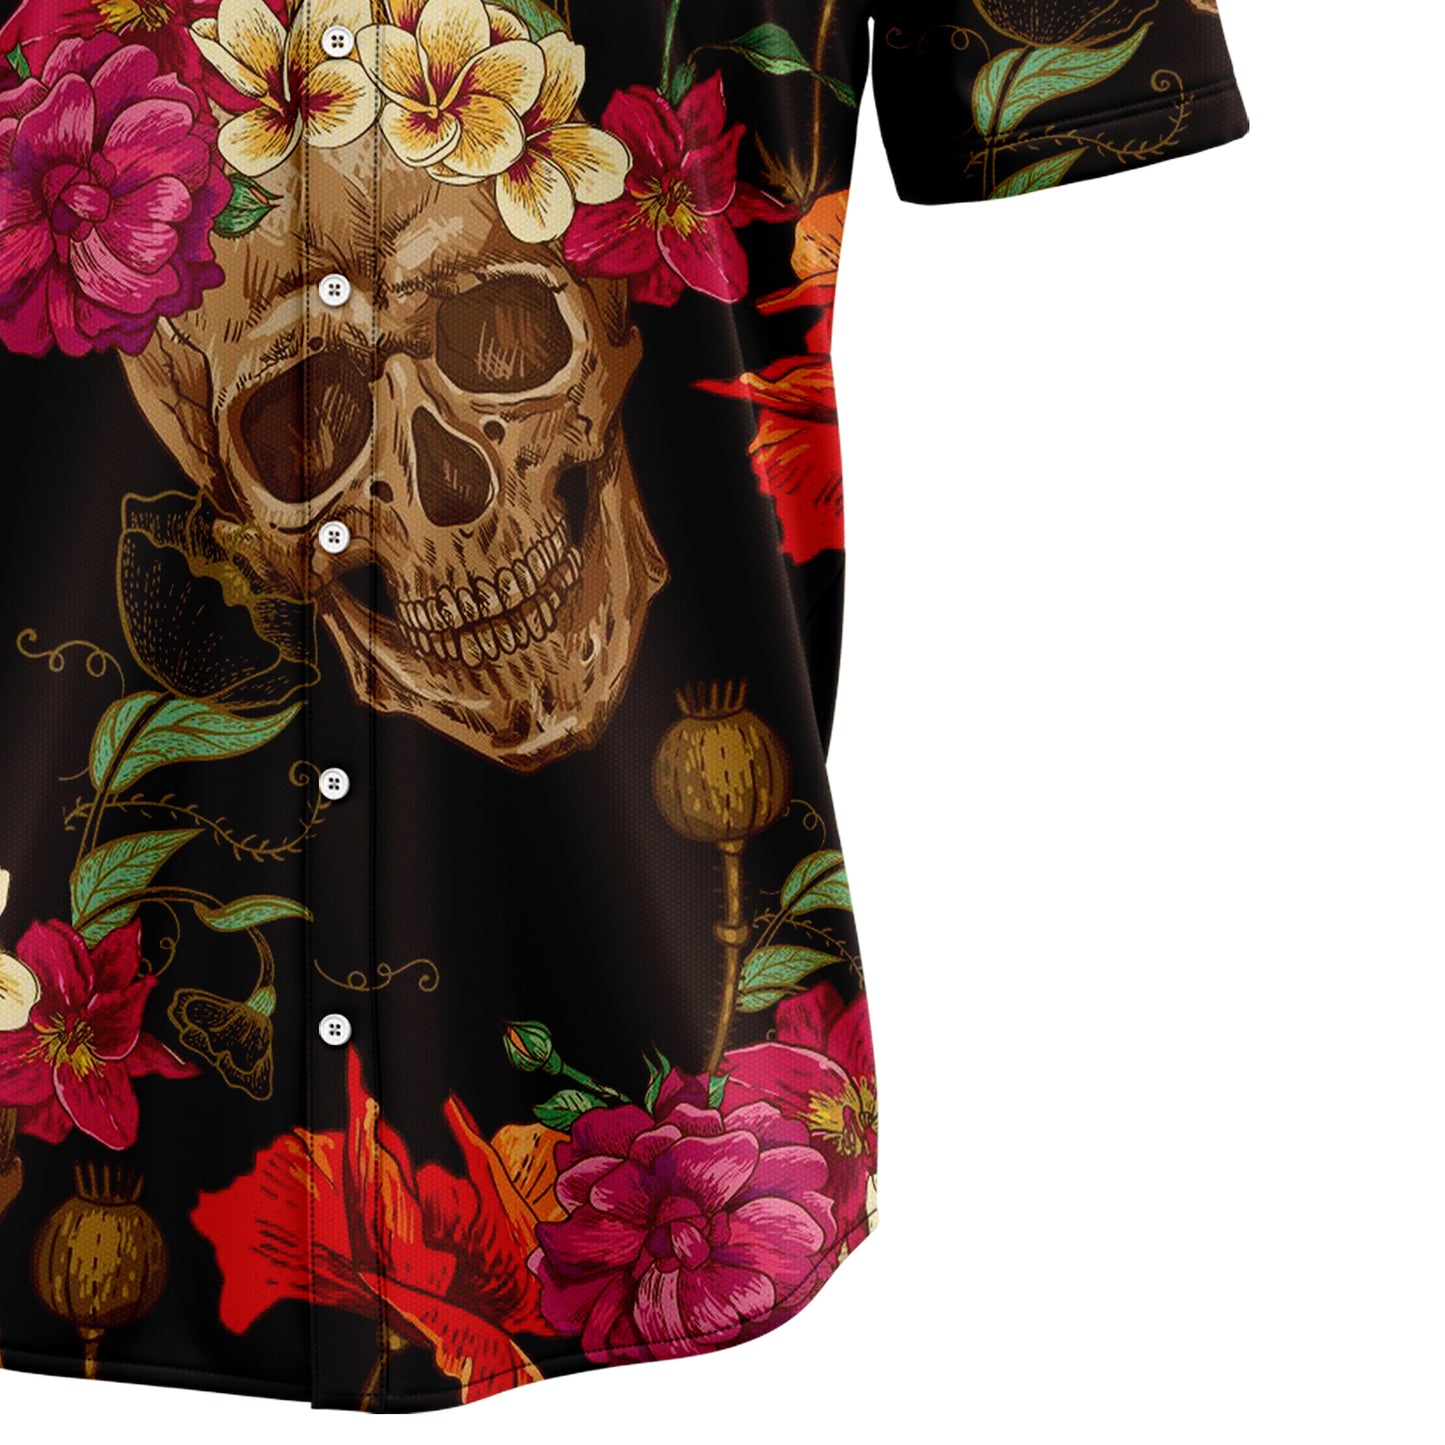 Skull Flower G5710 Hawaiian Shirt